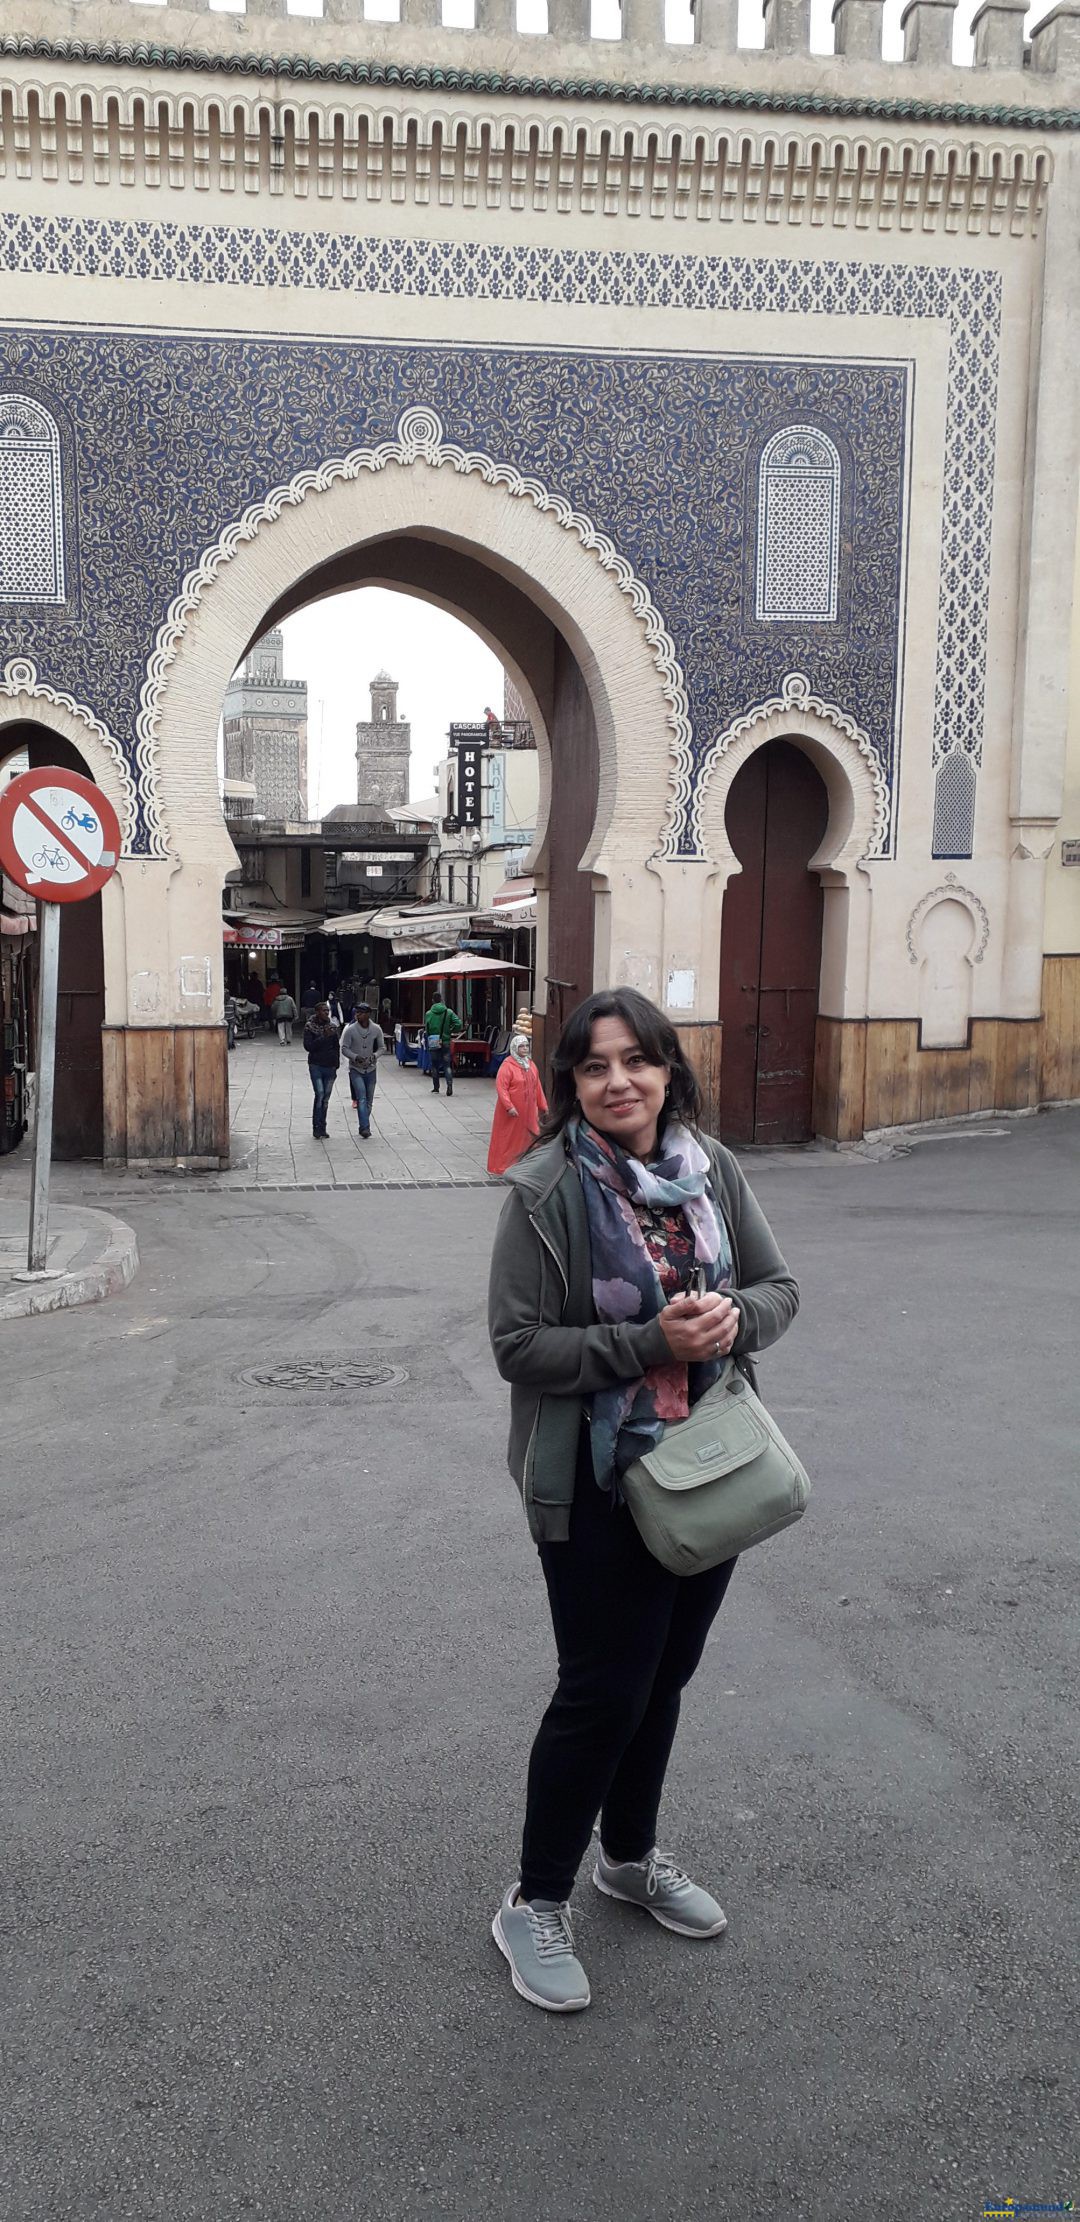 Puerta de la medina de Fez